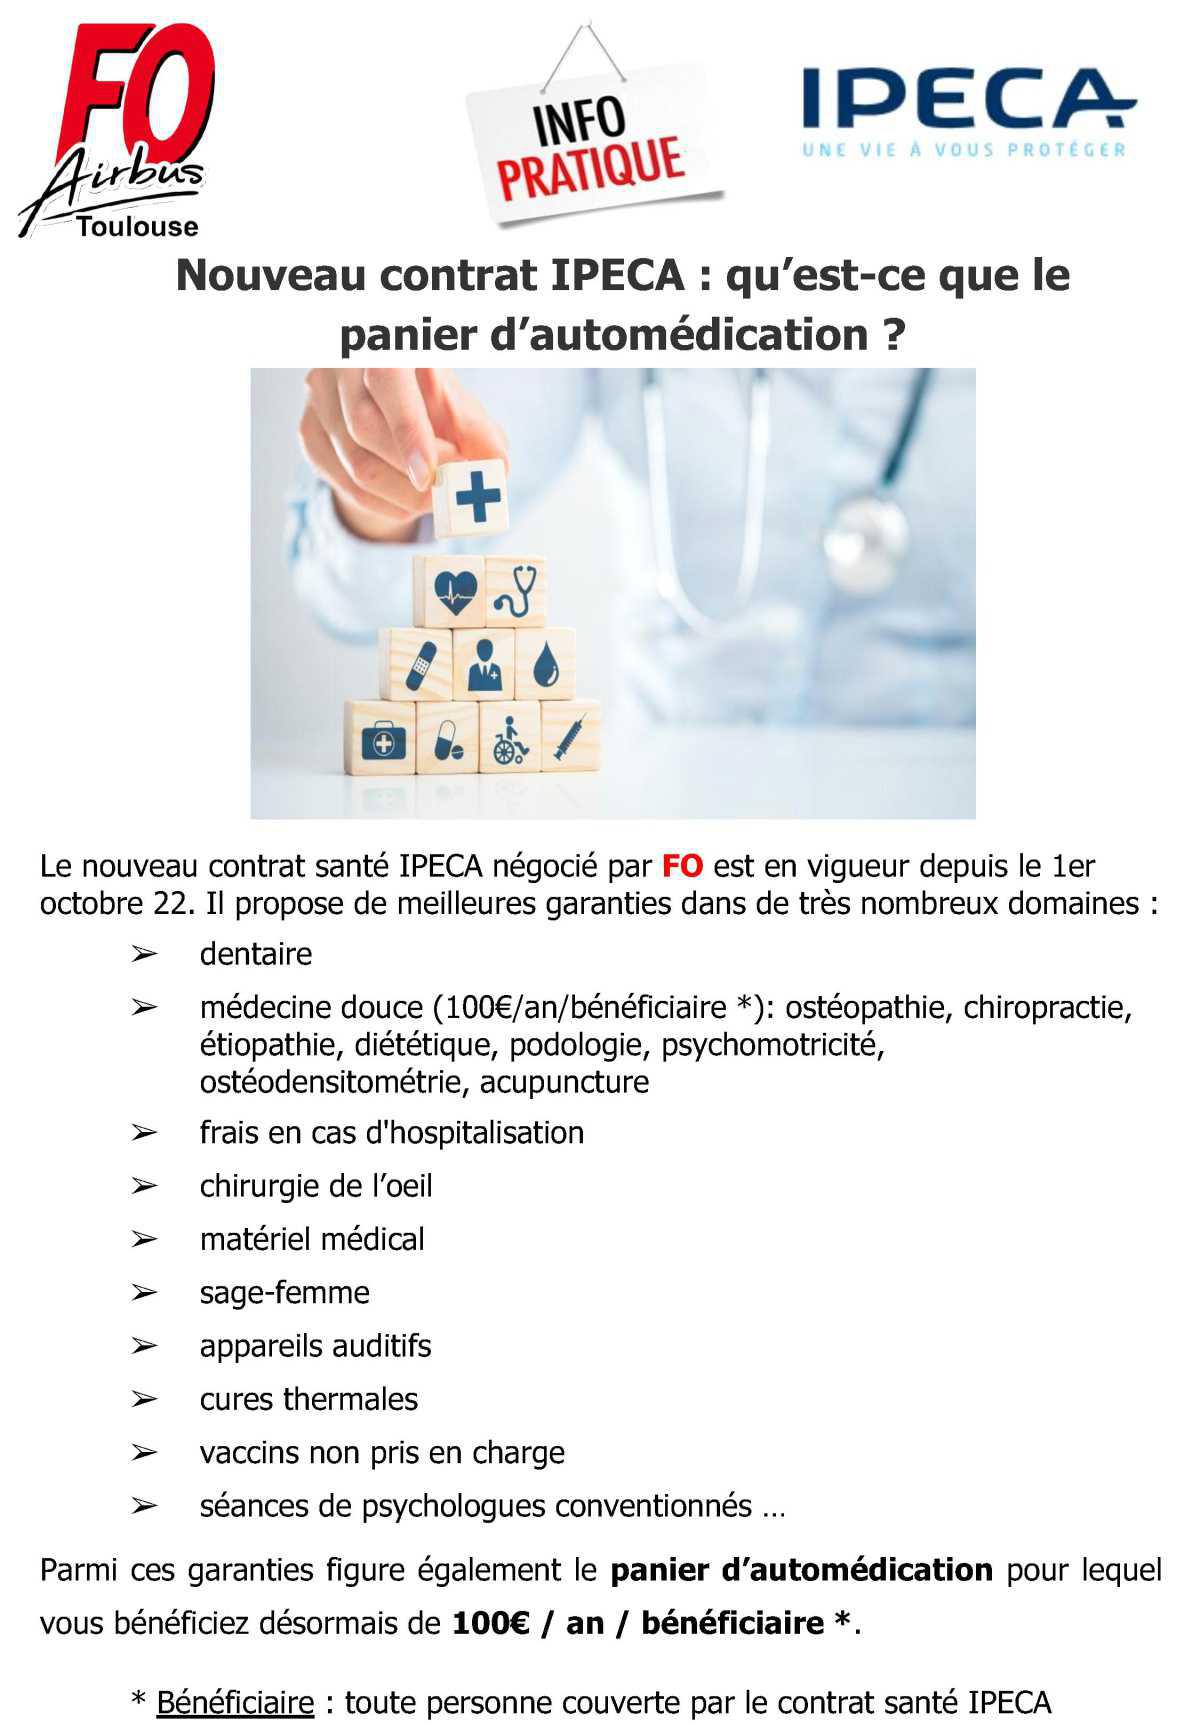 Nouveau contrat IPECA : qu'est-ce que le panier d'automédication ?